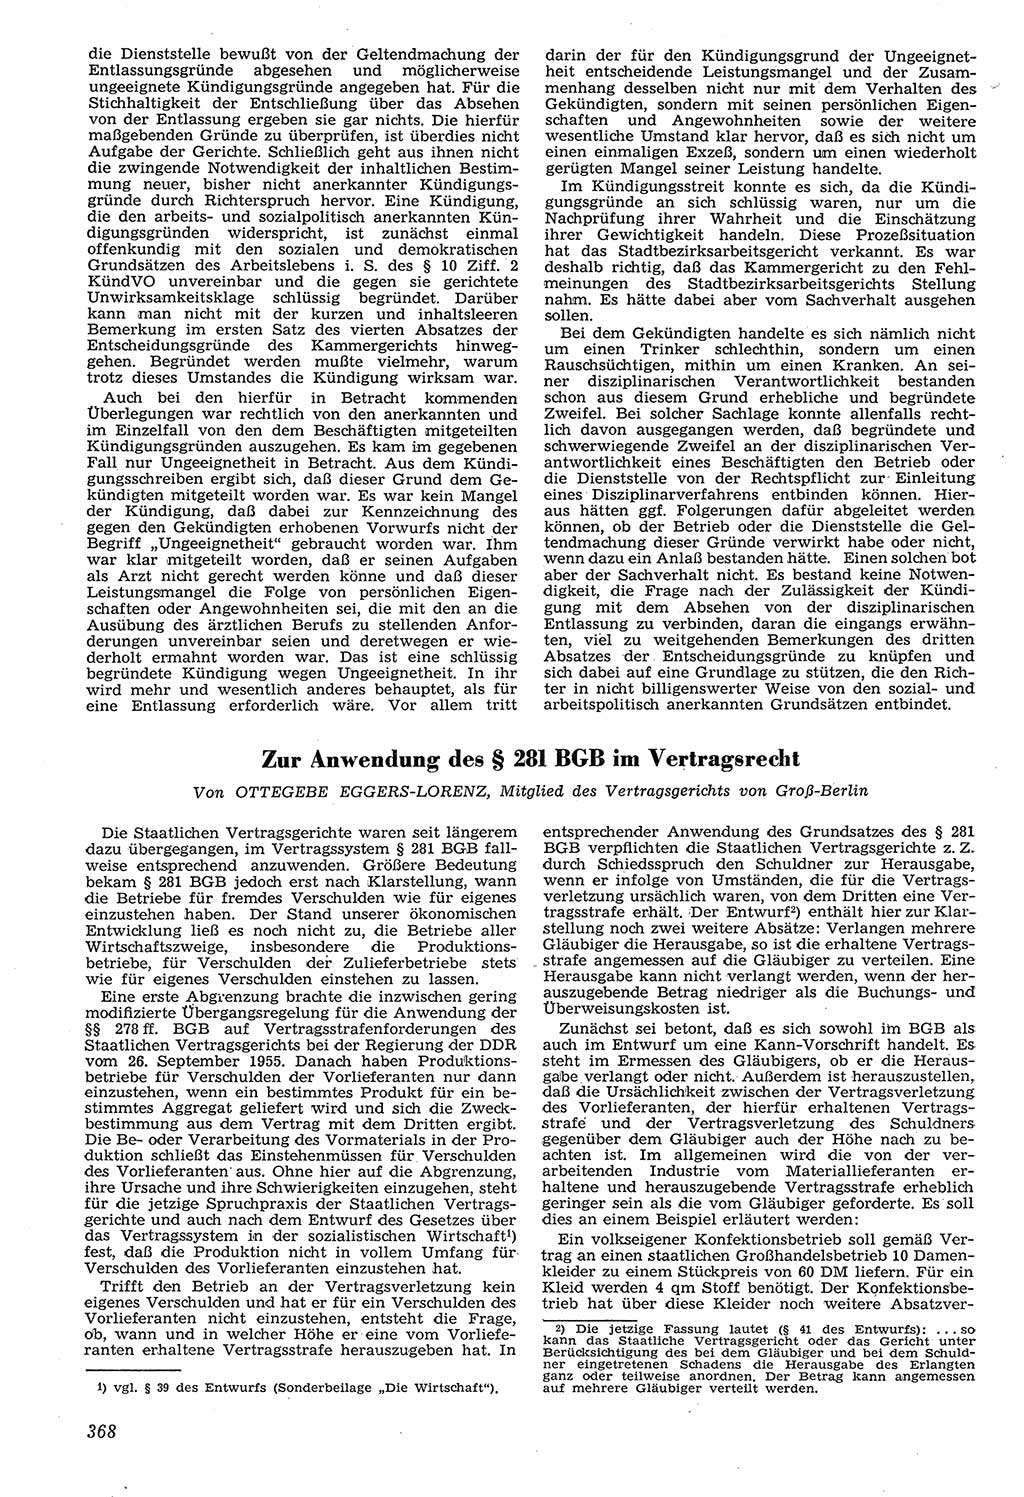 Neue Justiz (NJ), Zeitschrift für Recht und Rechtswissenschaft [Deutsche Demokratische Republik (DDR)], 11. Jahrgang 1957, Seite 368 (NJ DDR 1957, S. 368)